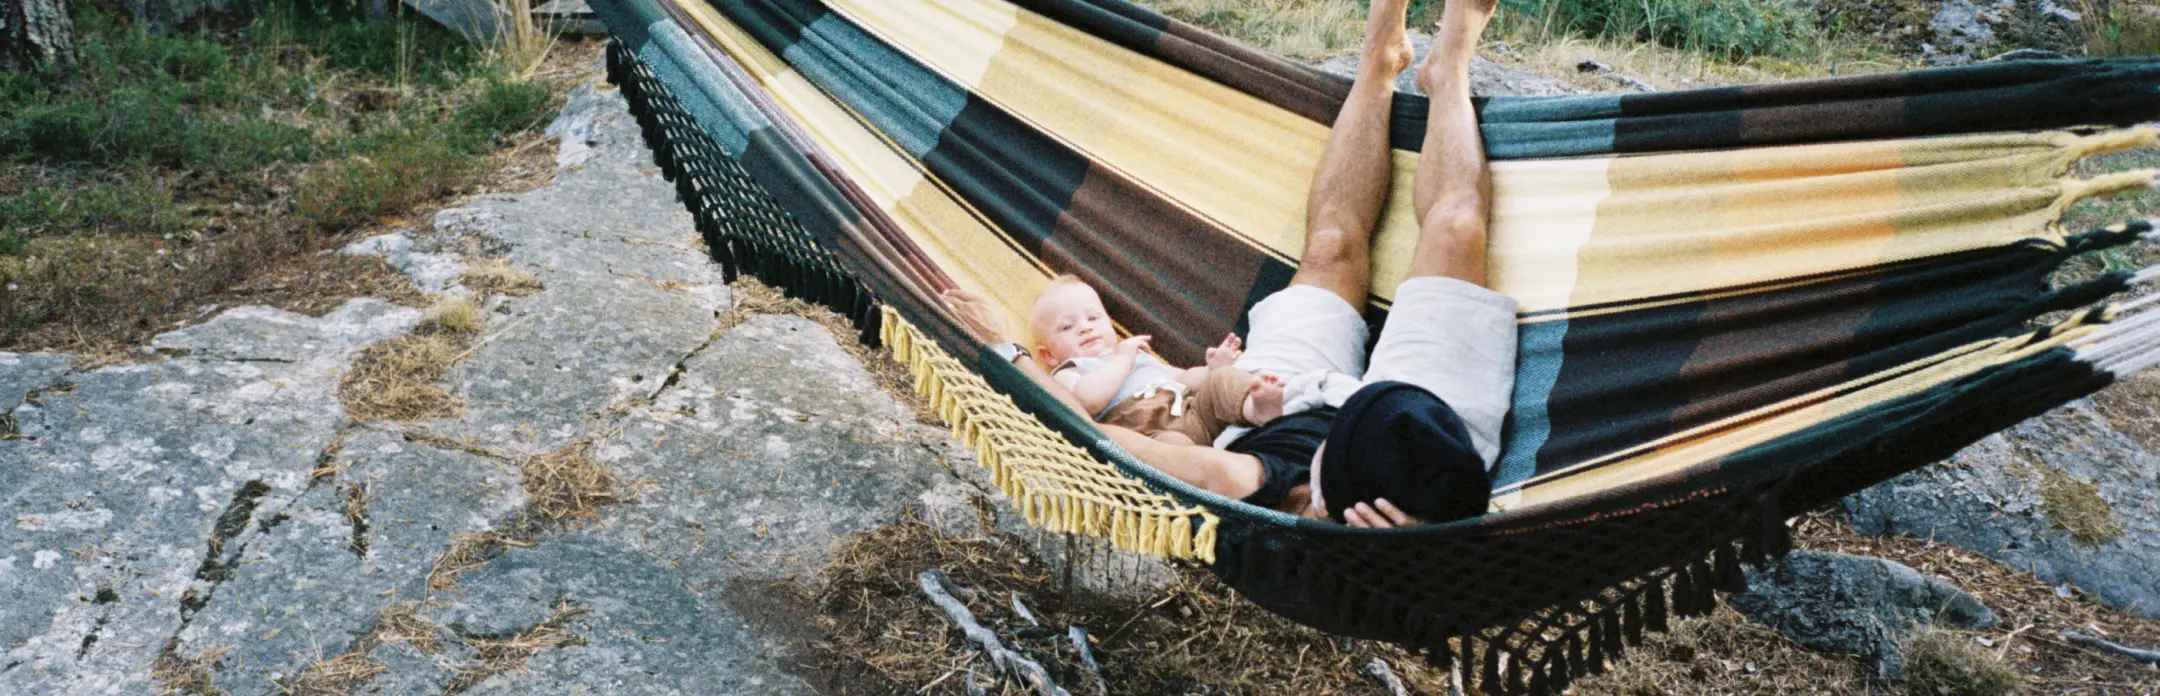 Uma pessoa e uma criança deitadas em uma rede ao ar livre, cercadas pela natureza, com uma pequena estufa ao fundo.